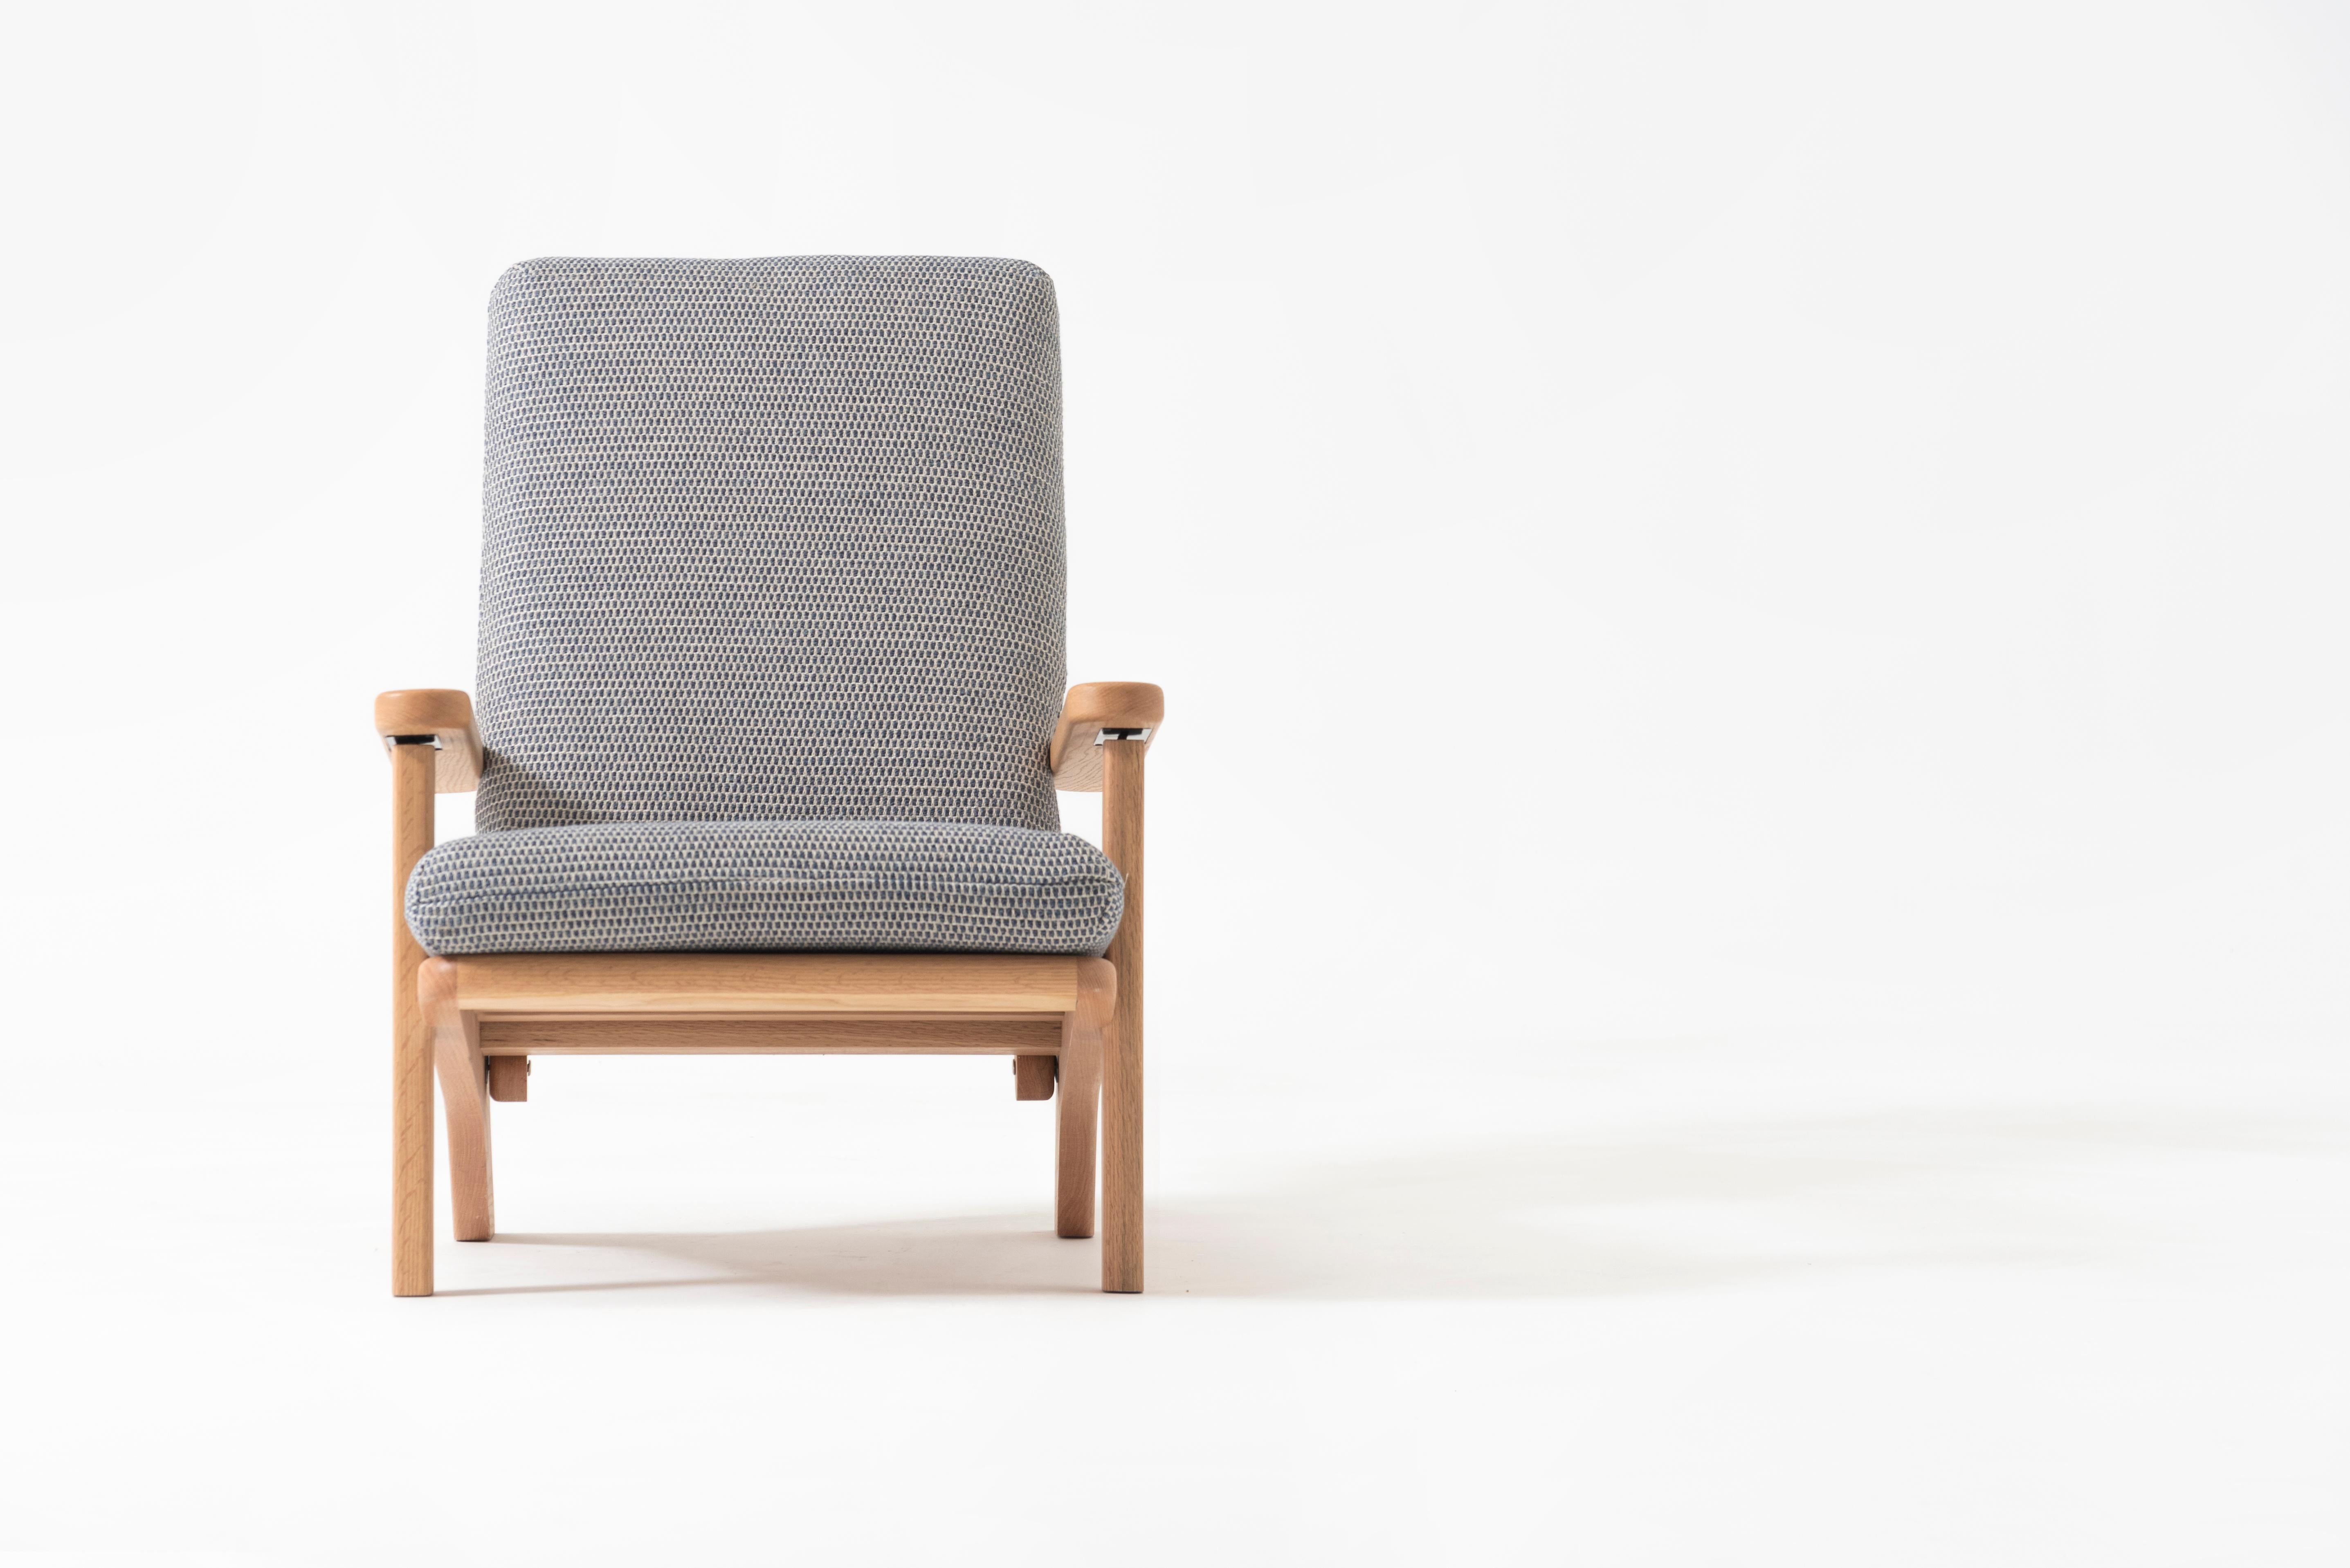 La chaise Siesta est une chaise spacieuse, robuste et basse, parfaite pour se prélasser, sculptée en bois massif.

Son dossier peut être incliné manuellement sur trois niveaux différents pour un plus grand confort. 

Et le siège est recouvert de